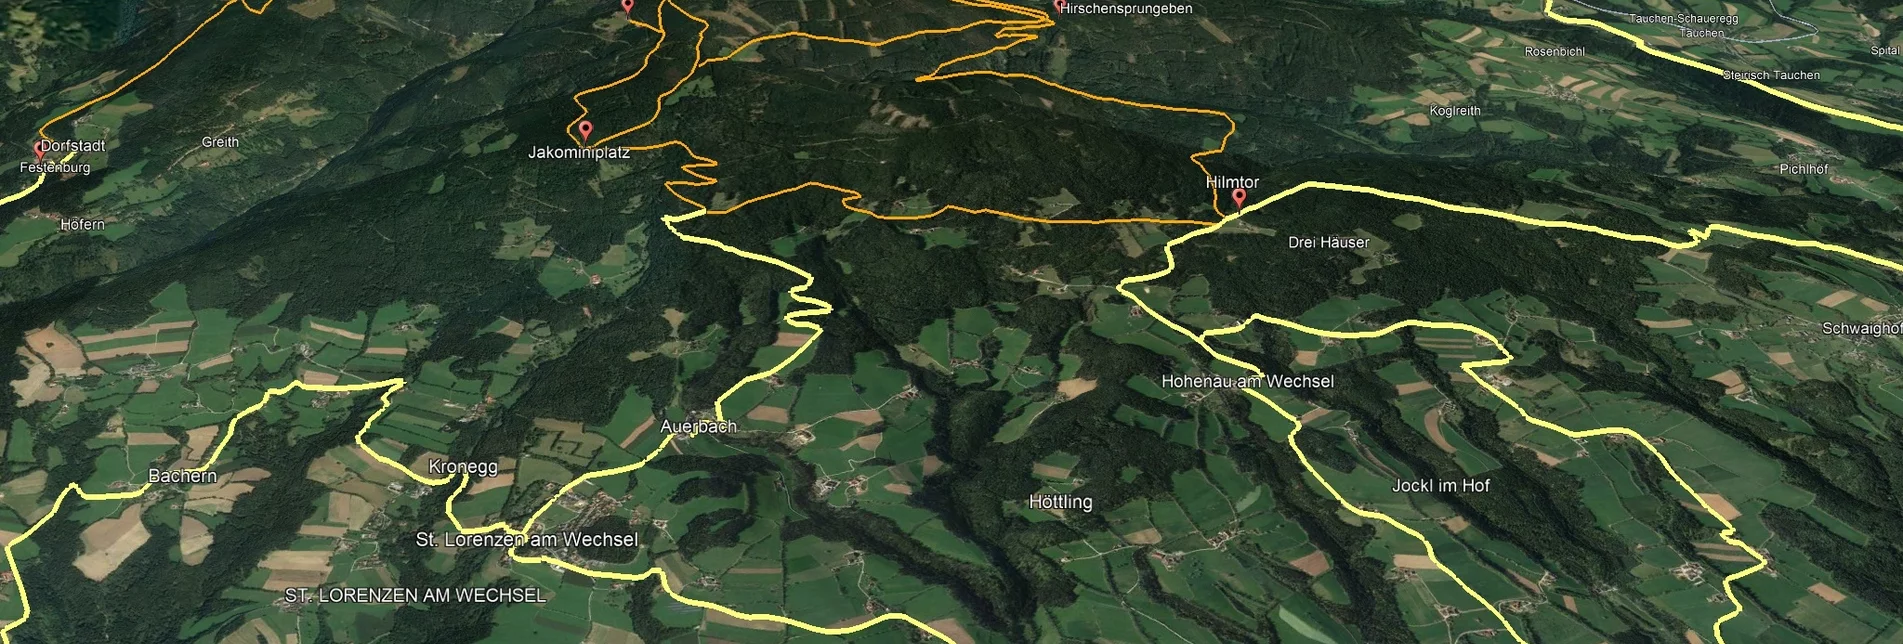 Mountainbike VORSCHAU Steirische Wexl Trails - Irrbühel Route - Touren-Impression #1 | © Verein Tourismusentwicklung Steirischer Wechsel